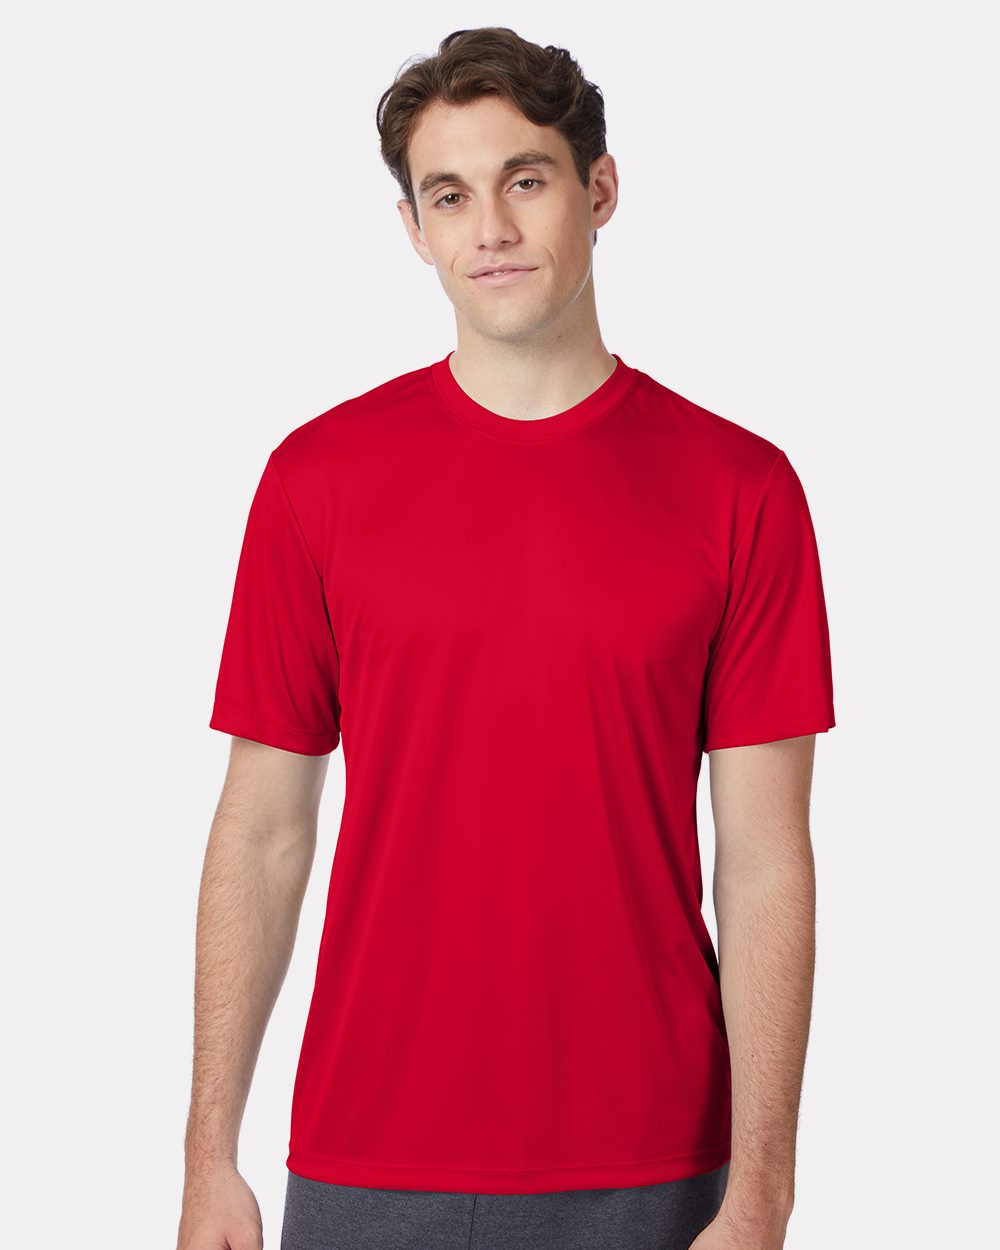 Hanes 4 oz Cool Dri T-Shirt 